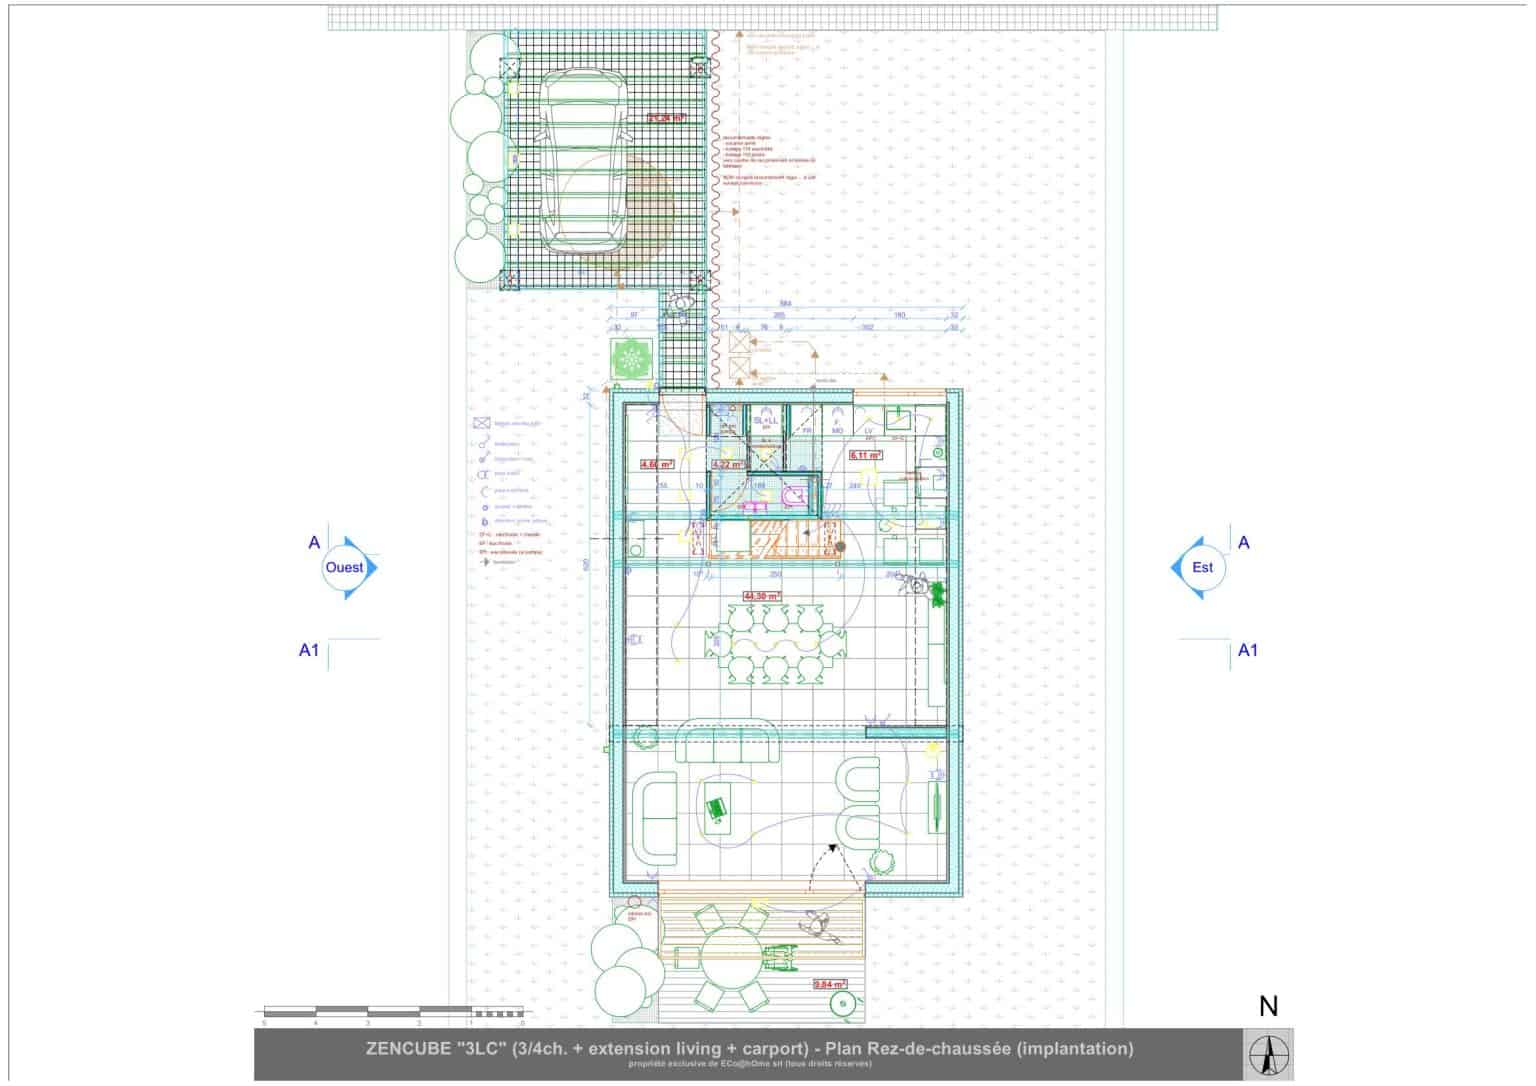 Plan d’architecte d’une maison unifamiliale ZenCube contemporaine